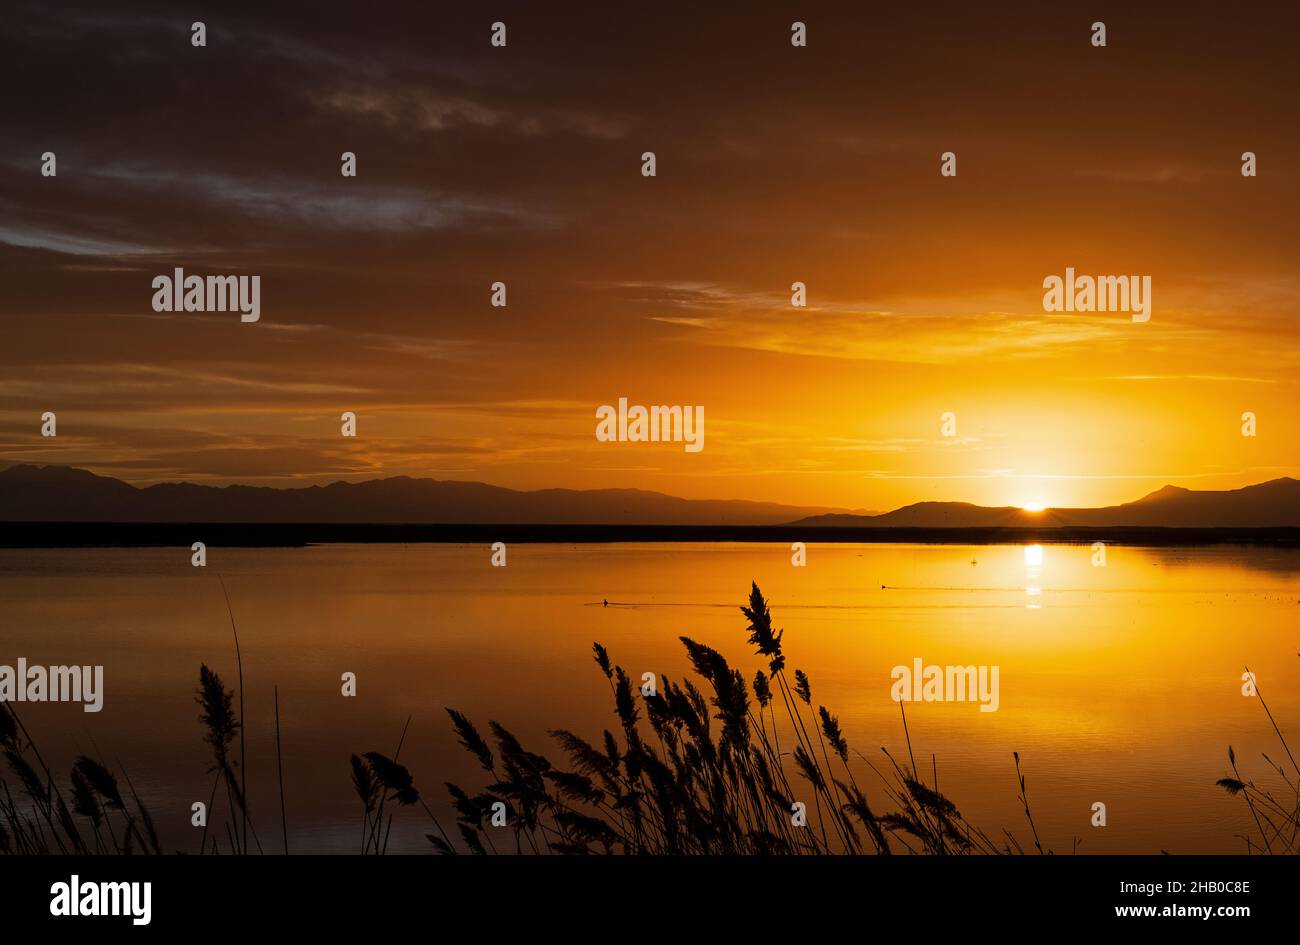 Das Nachglühen des Sonnenuntergangs erhellt die Wolken und das Wasser im Wasservogelmanagement-Gebiet Farmington Bay, Farmington, Davis County, Utah, USA. Stockfoto